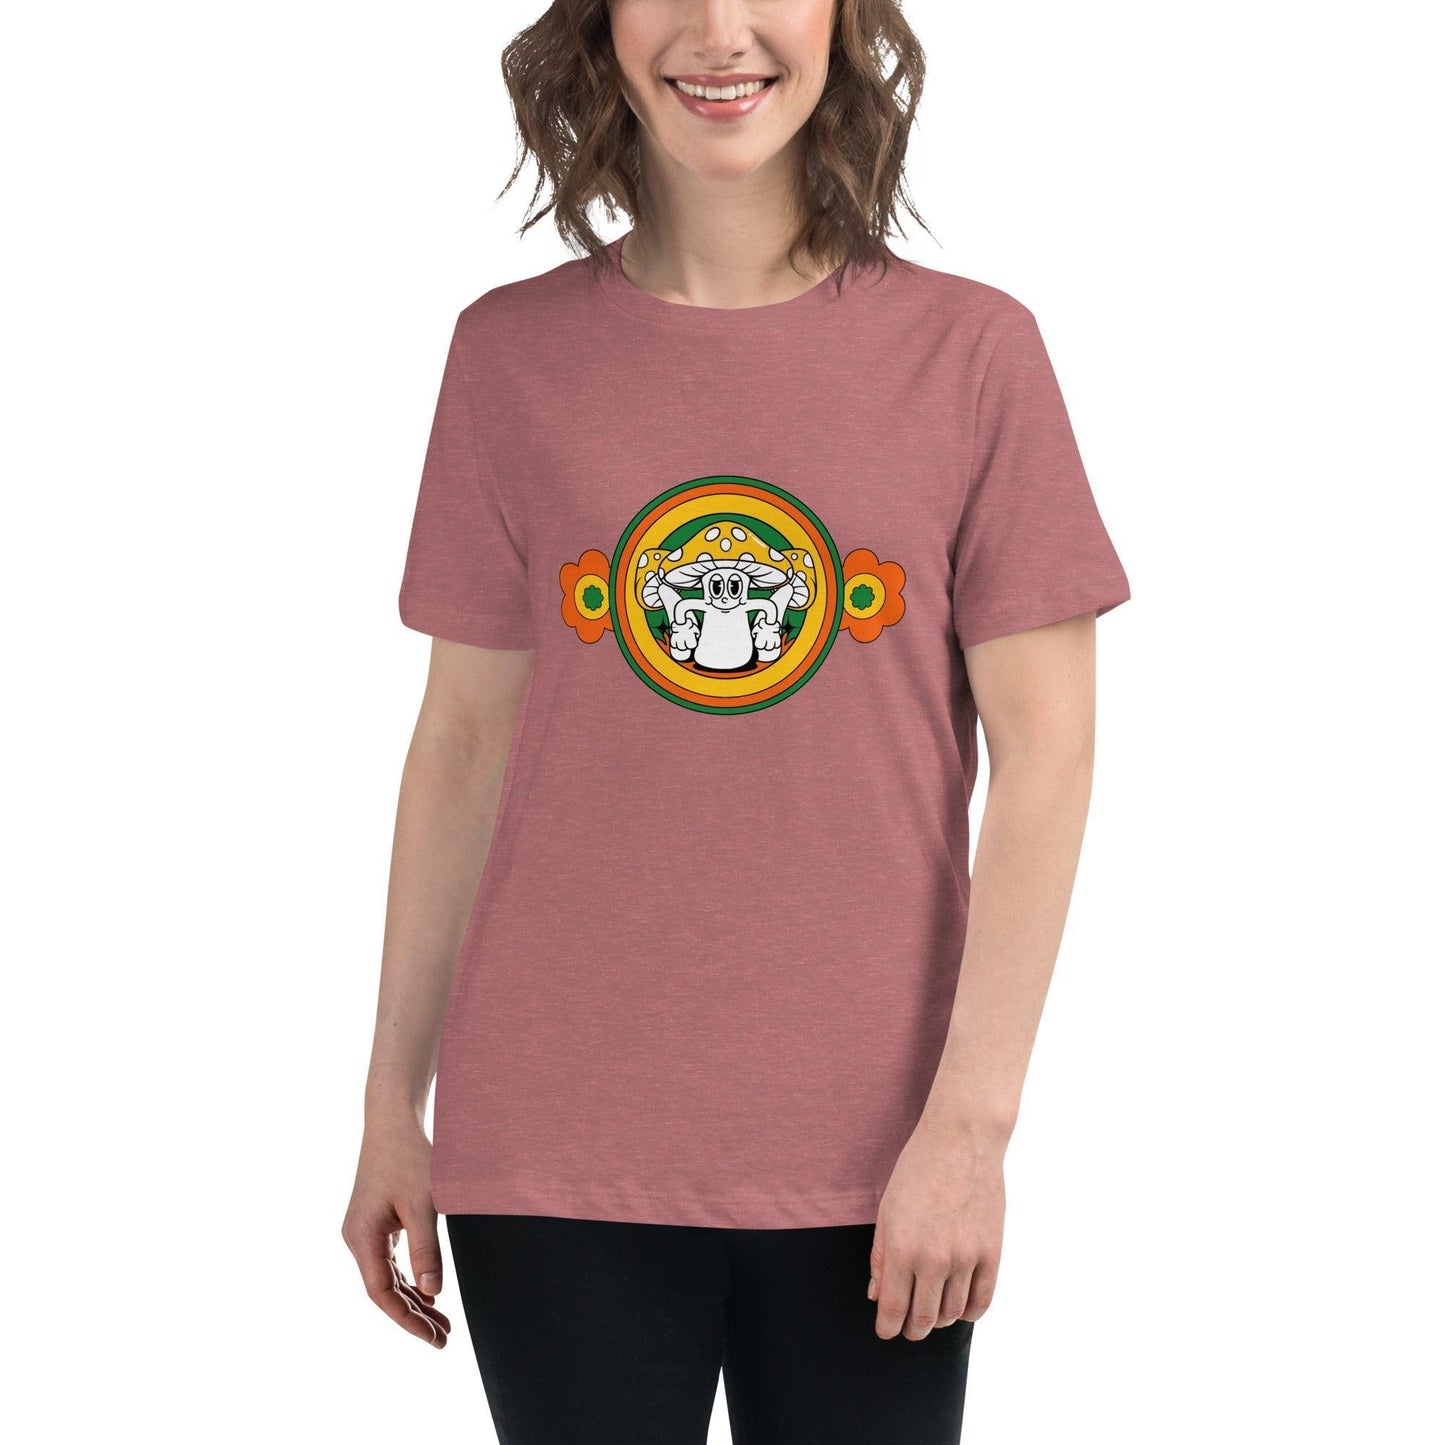 Camiseta suelta "Setita floral" | ¡La camiseta perfecta para un look bohemio y chic! - Silvornique